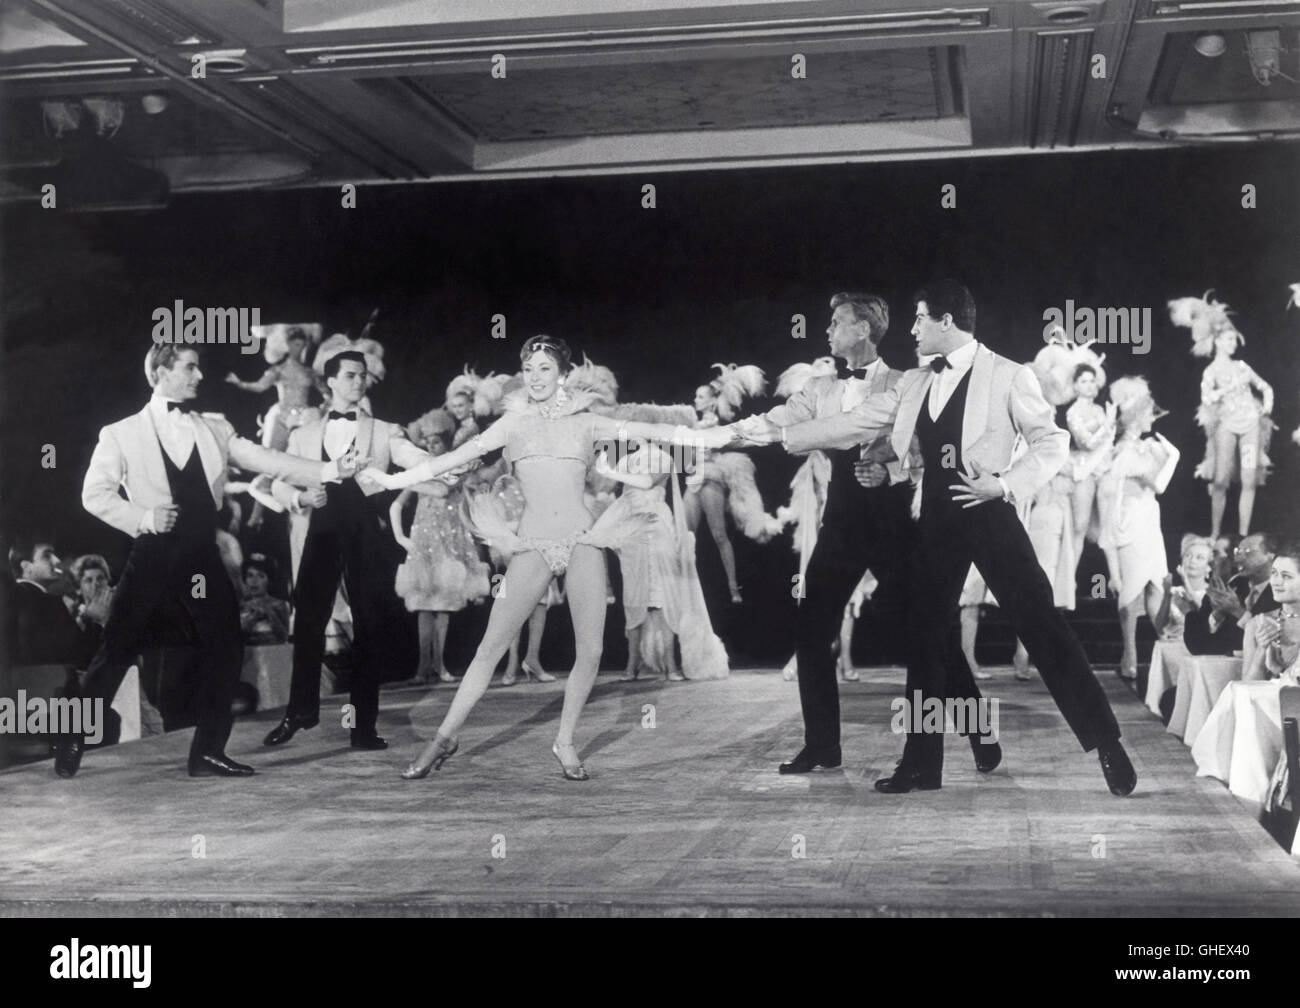 IL MONDO DI NOTTE Welt von Nacht Italien 1959 Luigi Vanzi zeigen Tänzer auf der Bühne Regie: Luigi Vanzi aka. Welt bei Nacht Stockfoto